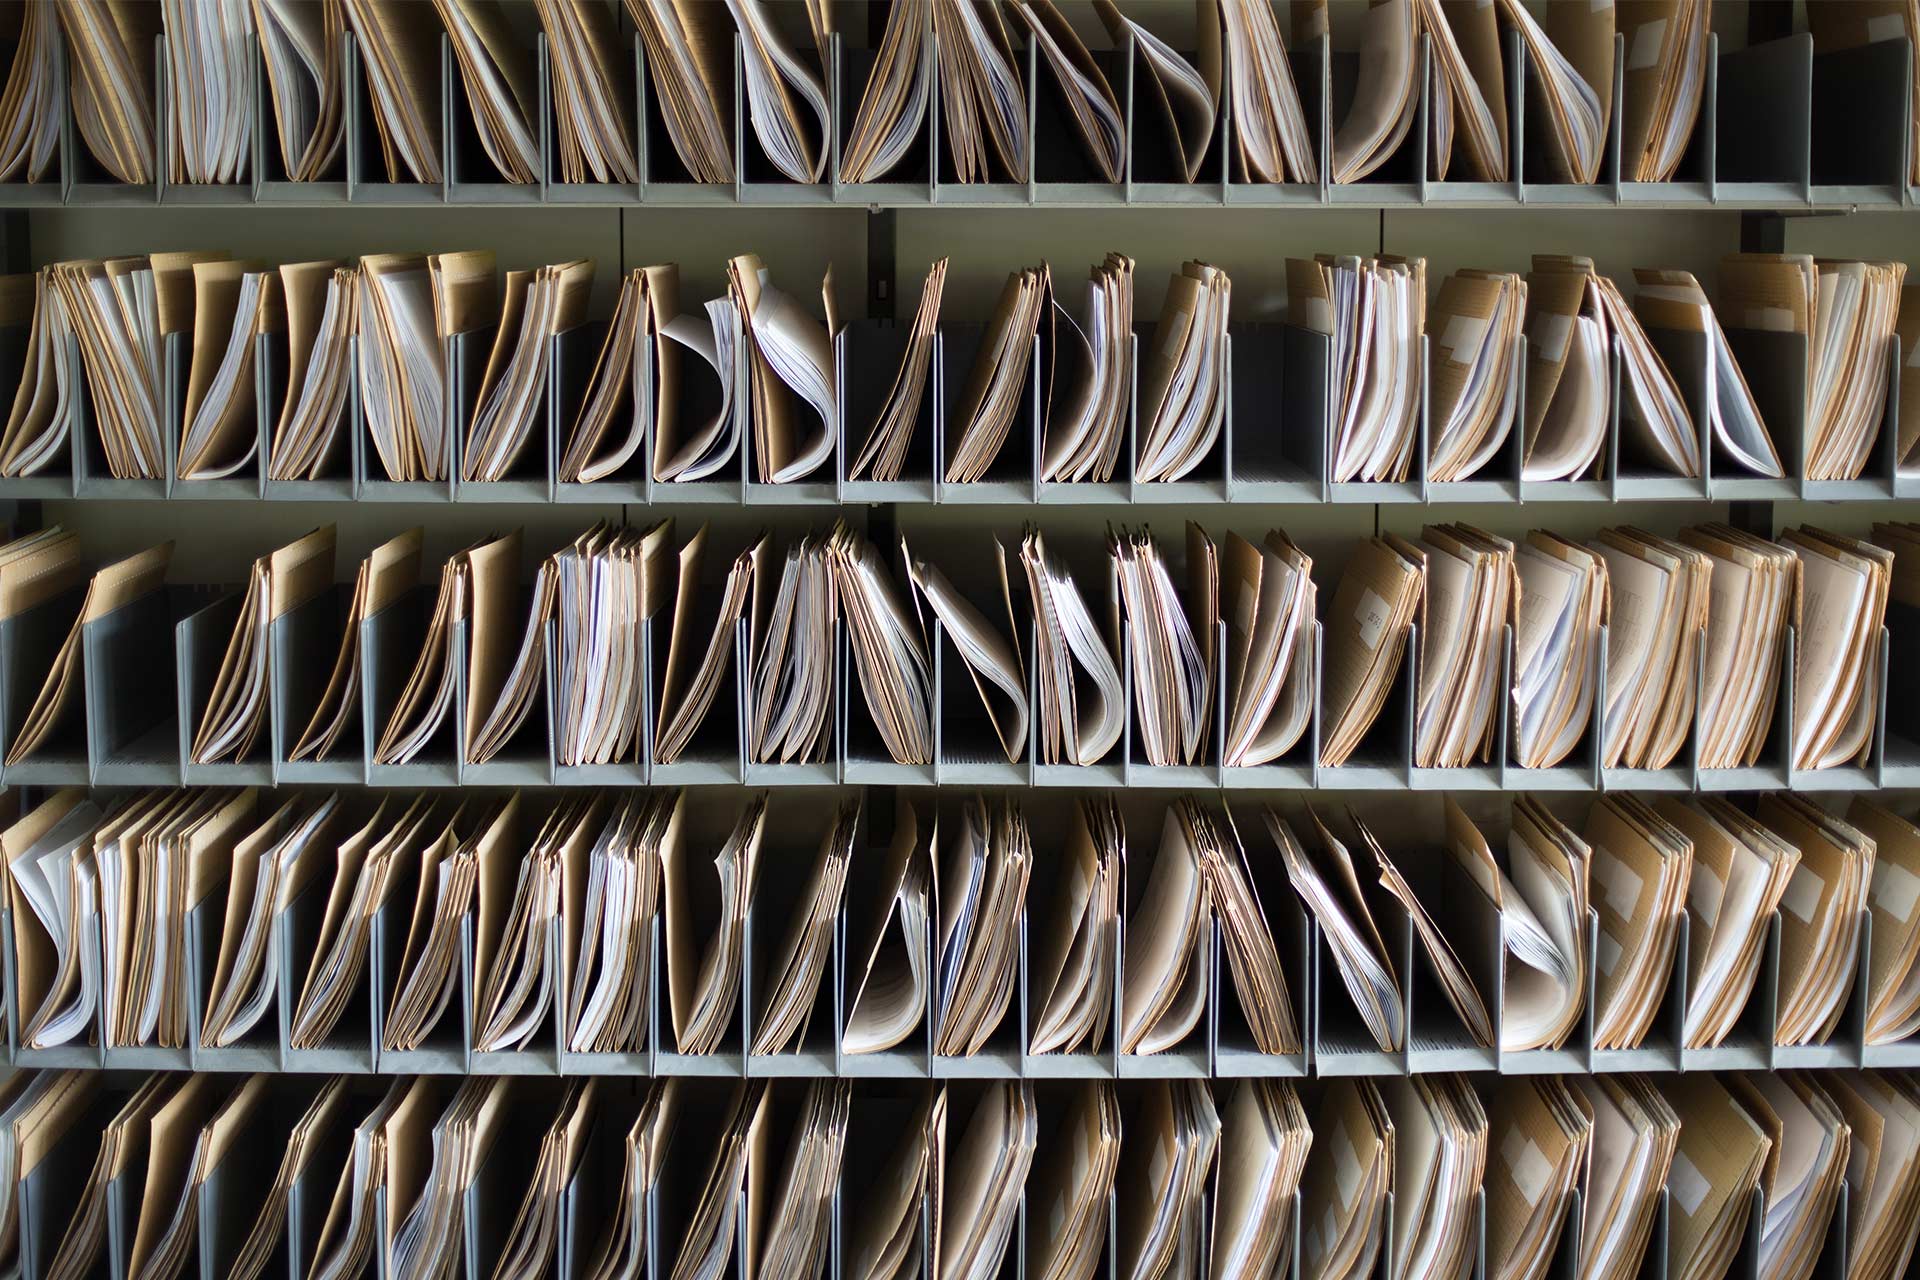 Arquivos em papel armazenados como registros, representando o processo de backup do computador como uma forma de arquivamento